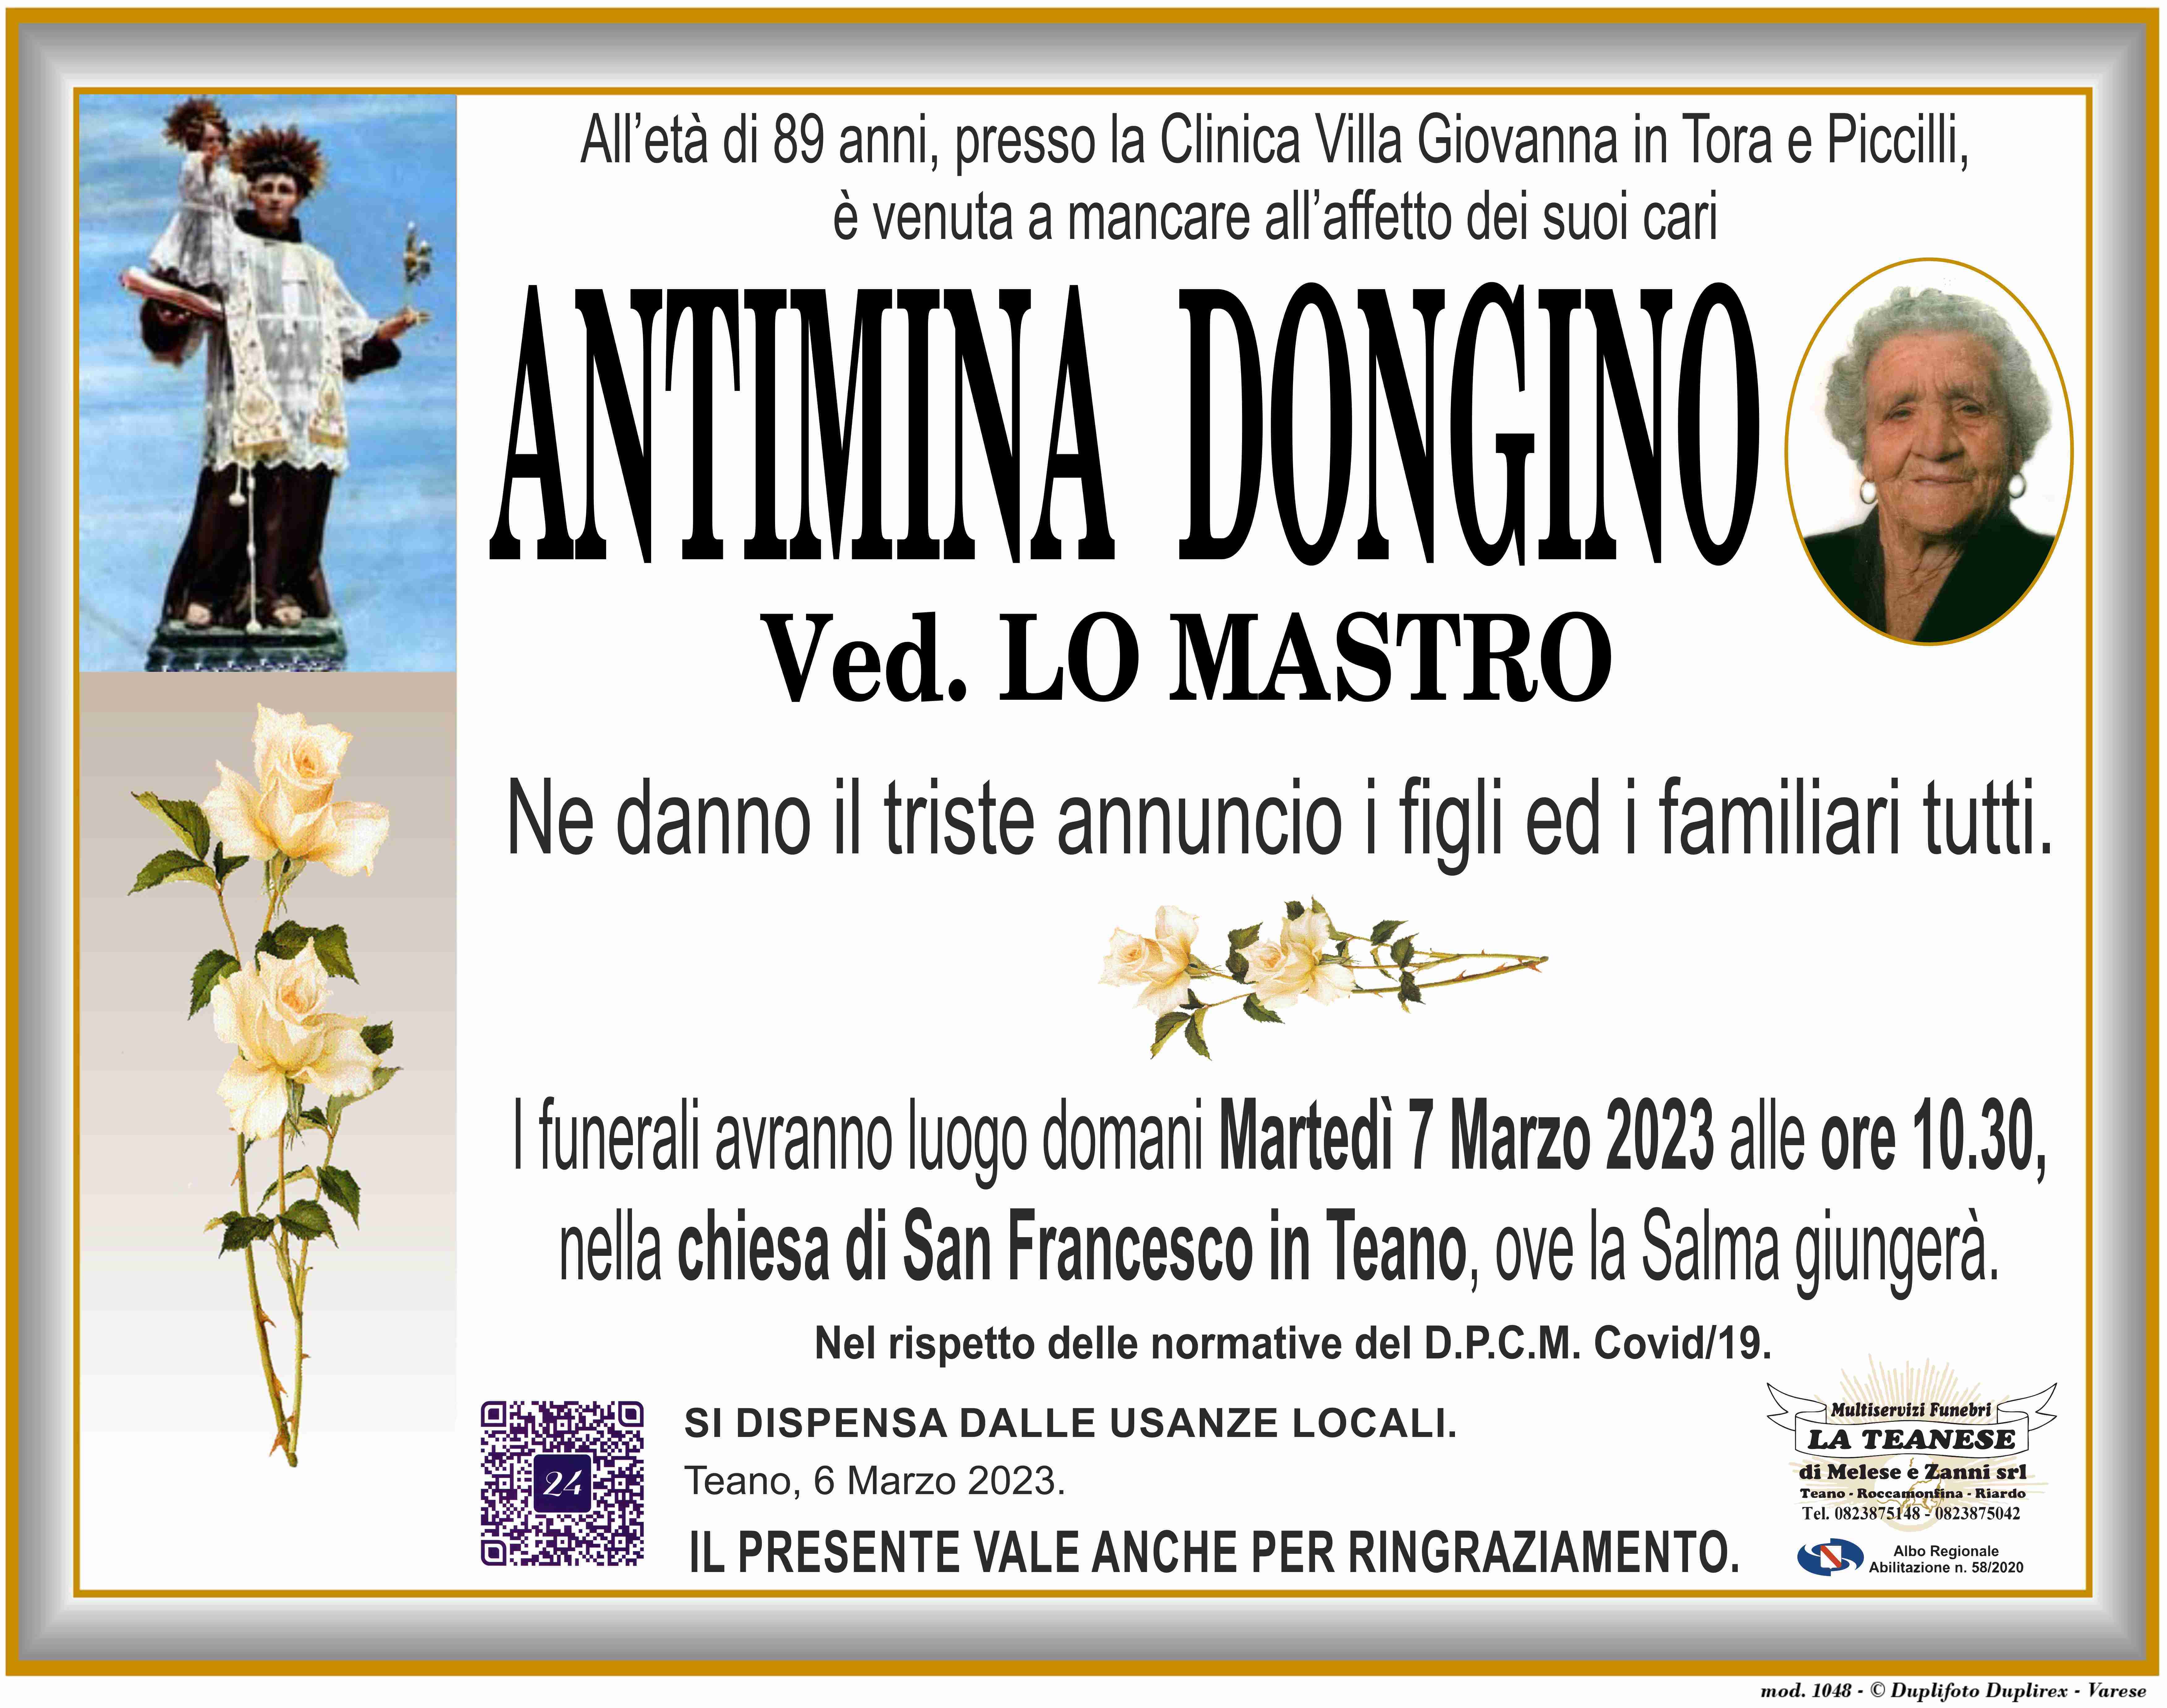 Antimina Dongino